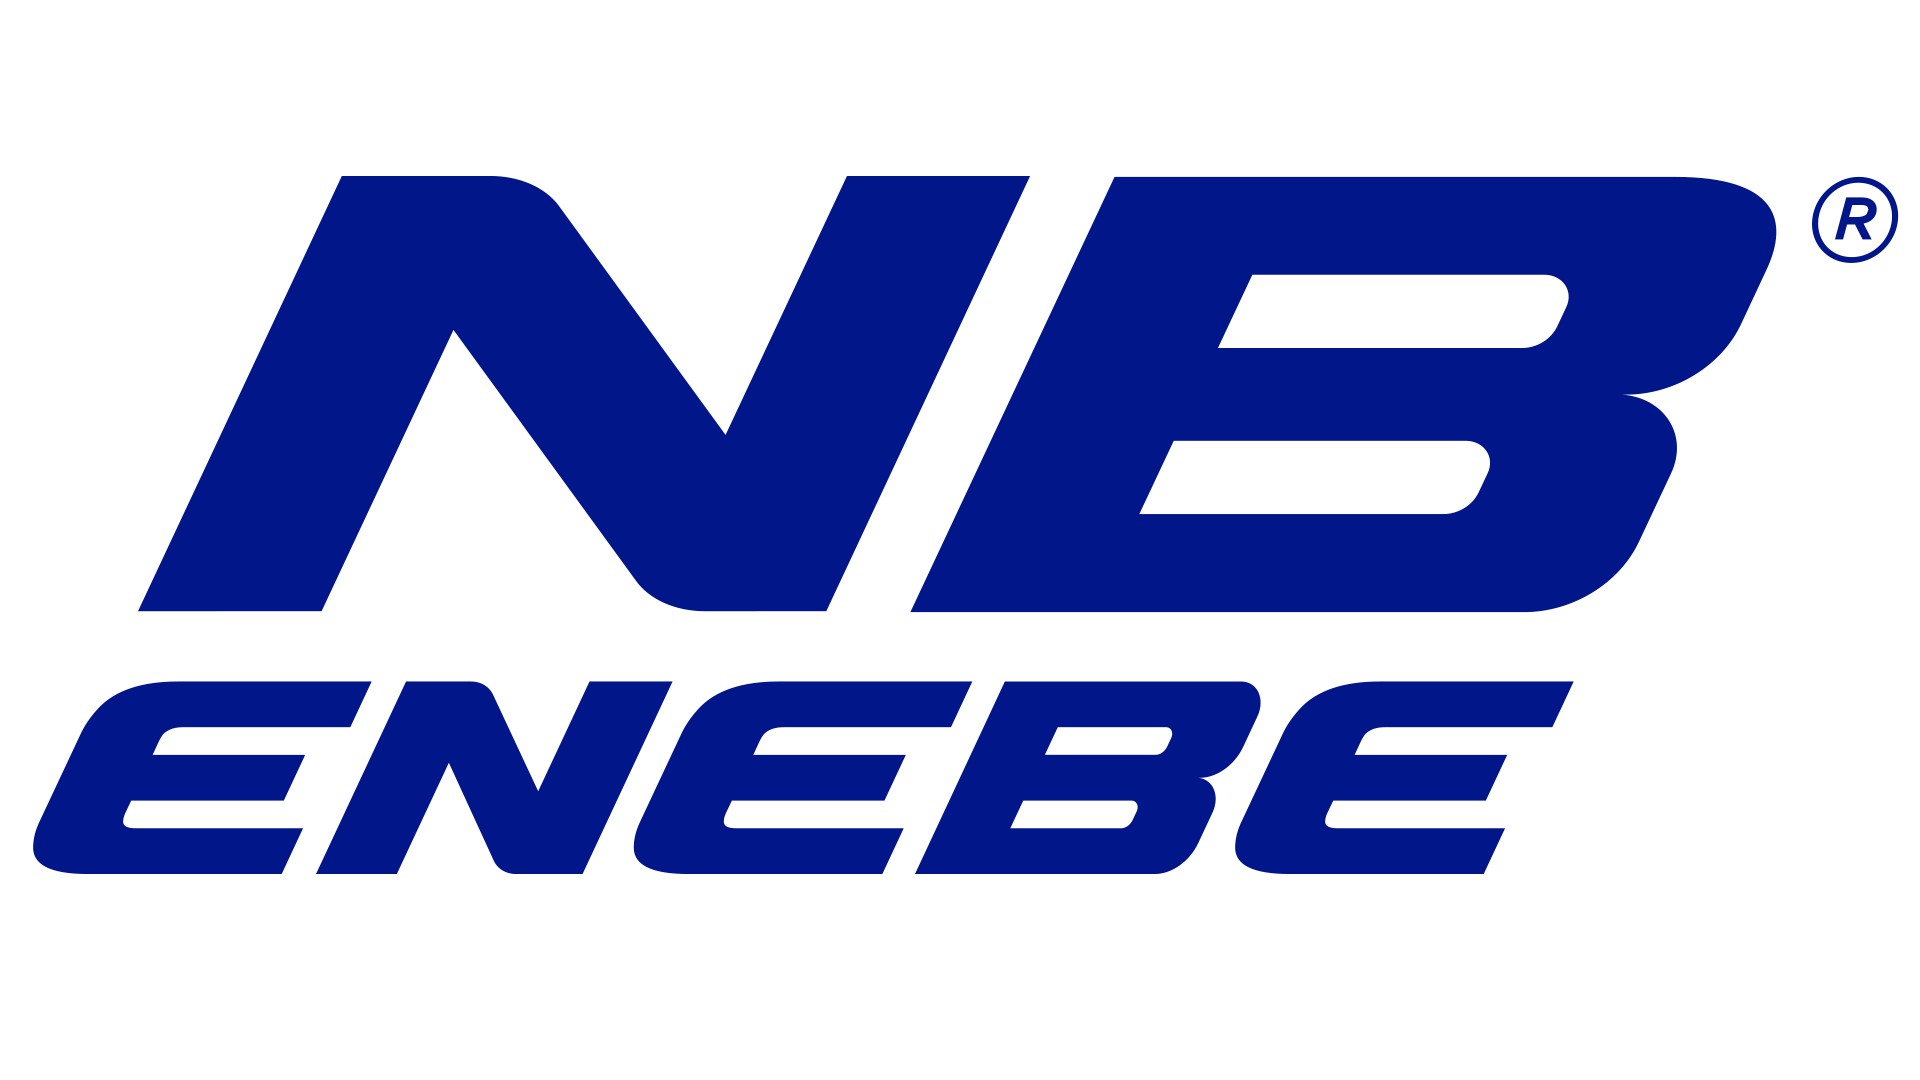 NB Enebe